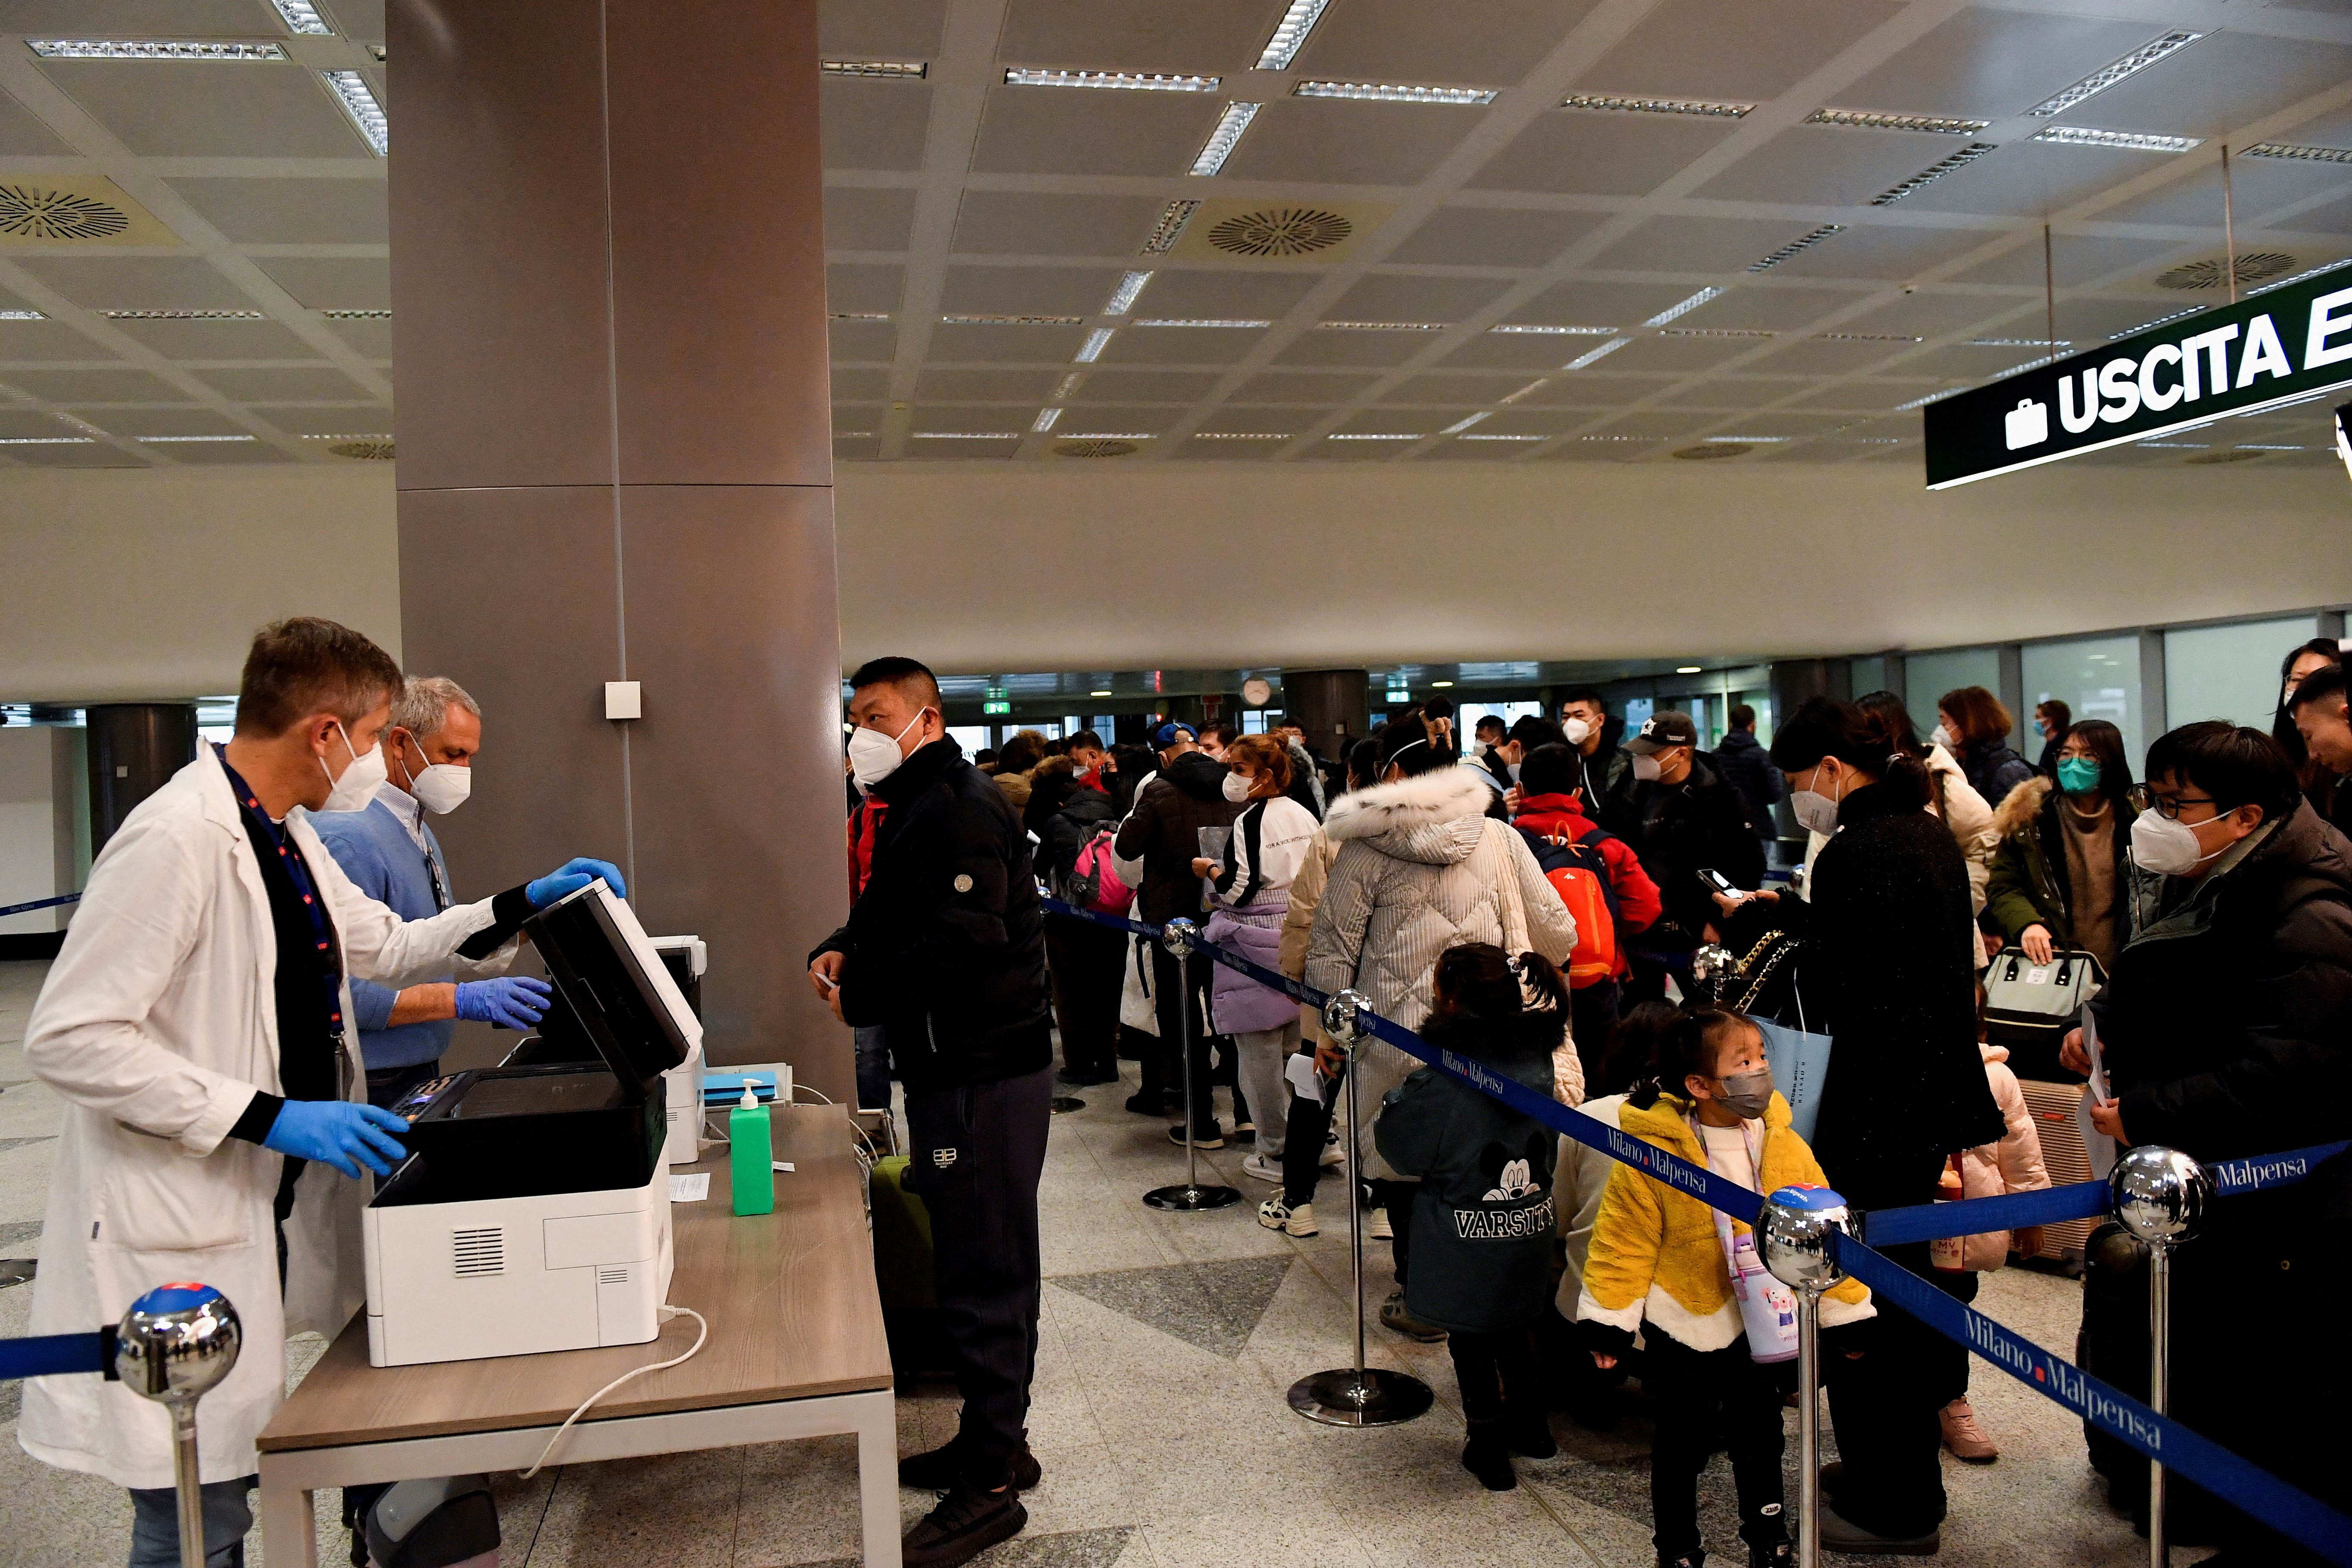 Ταξιδιωτικοί περιορισμοί λόγω κορωνοϊού κατά των κρατικών μέσων ενημέρωσης που εισάγουν διακρίσεις για τους Κινέζους επισκέπτες